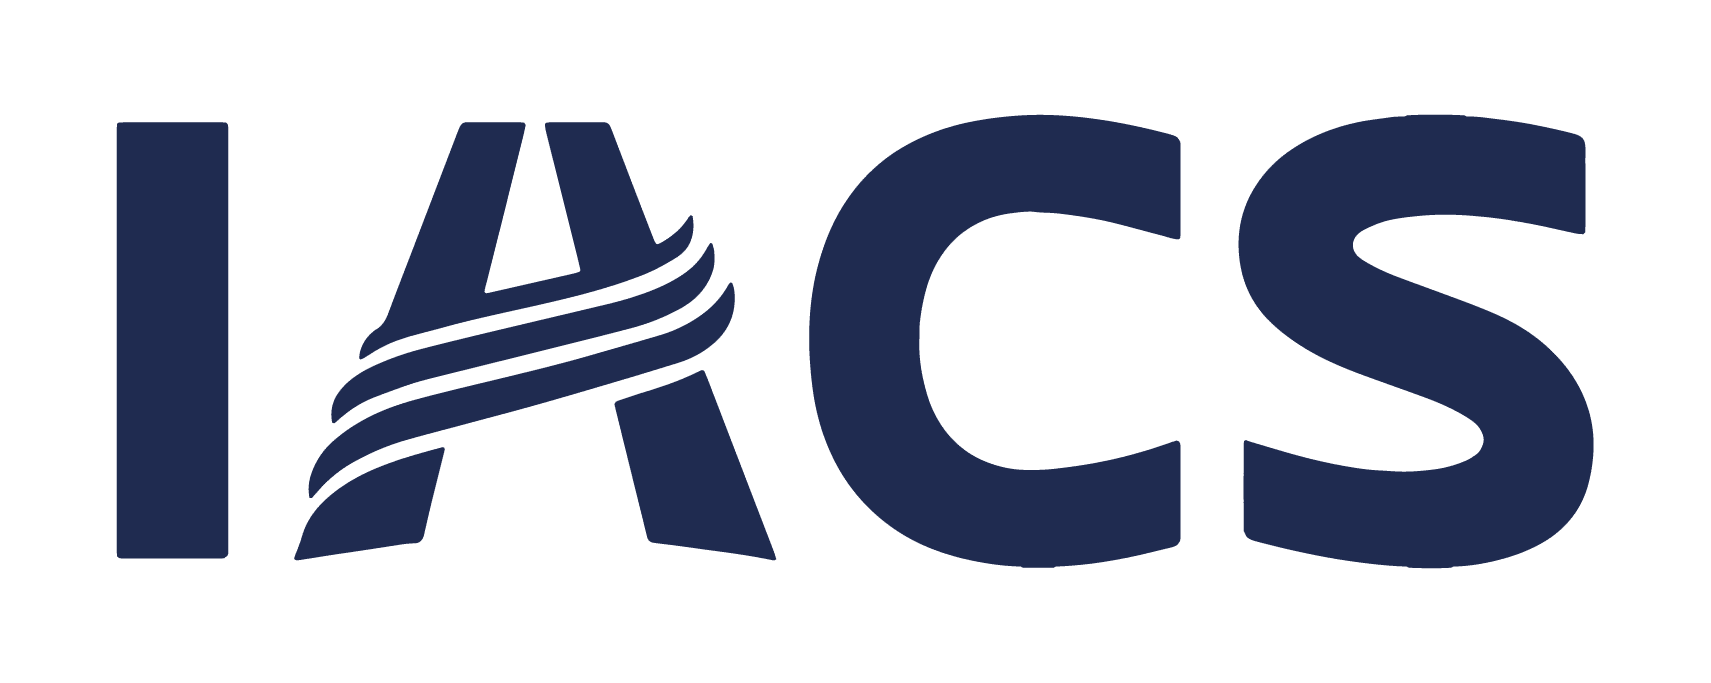 IACS – Instituto Adventista Cruzeiro do Sul – Internato | Externato – Educação Adventista